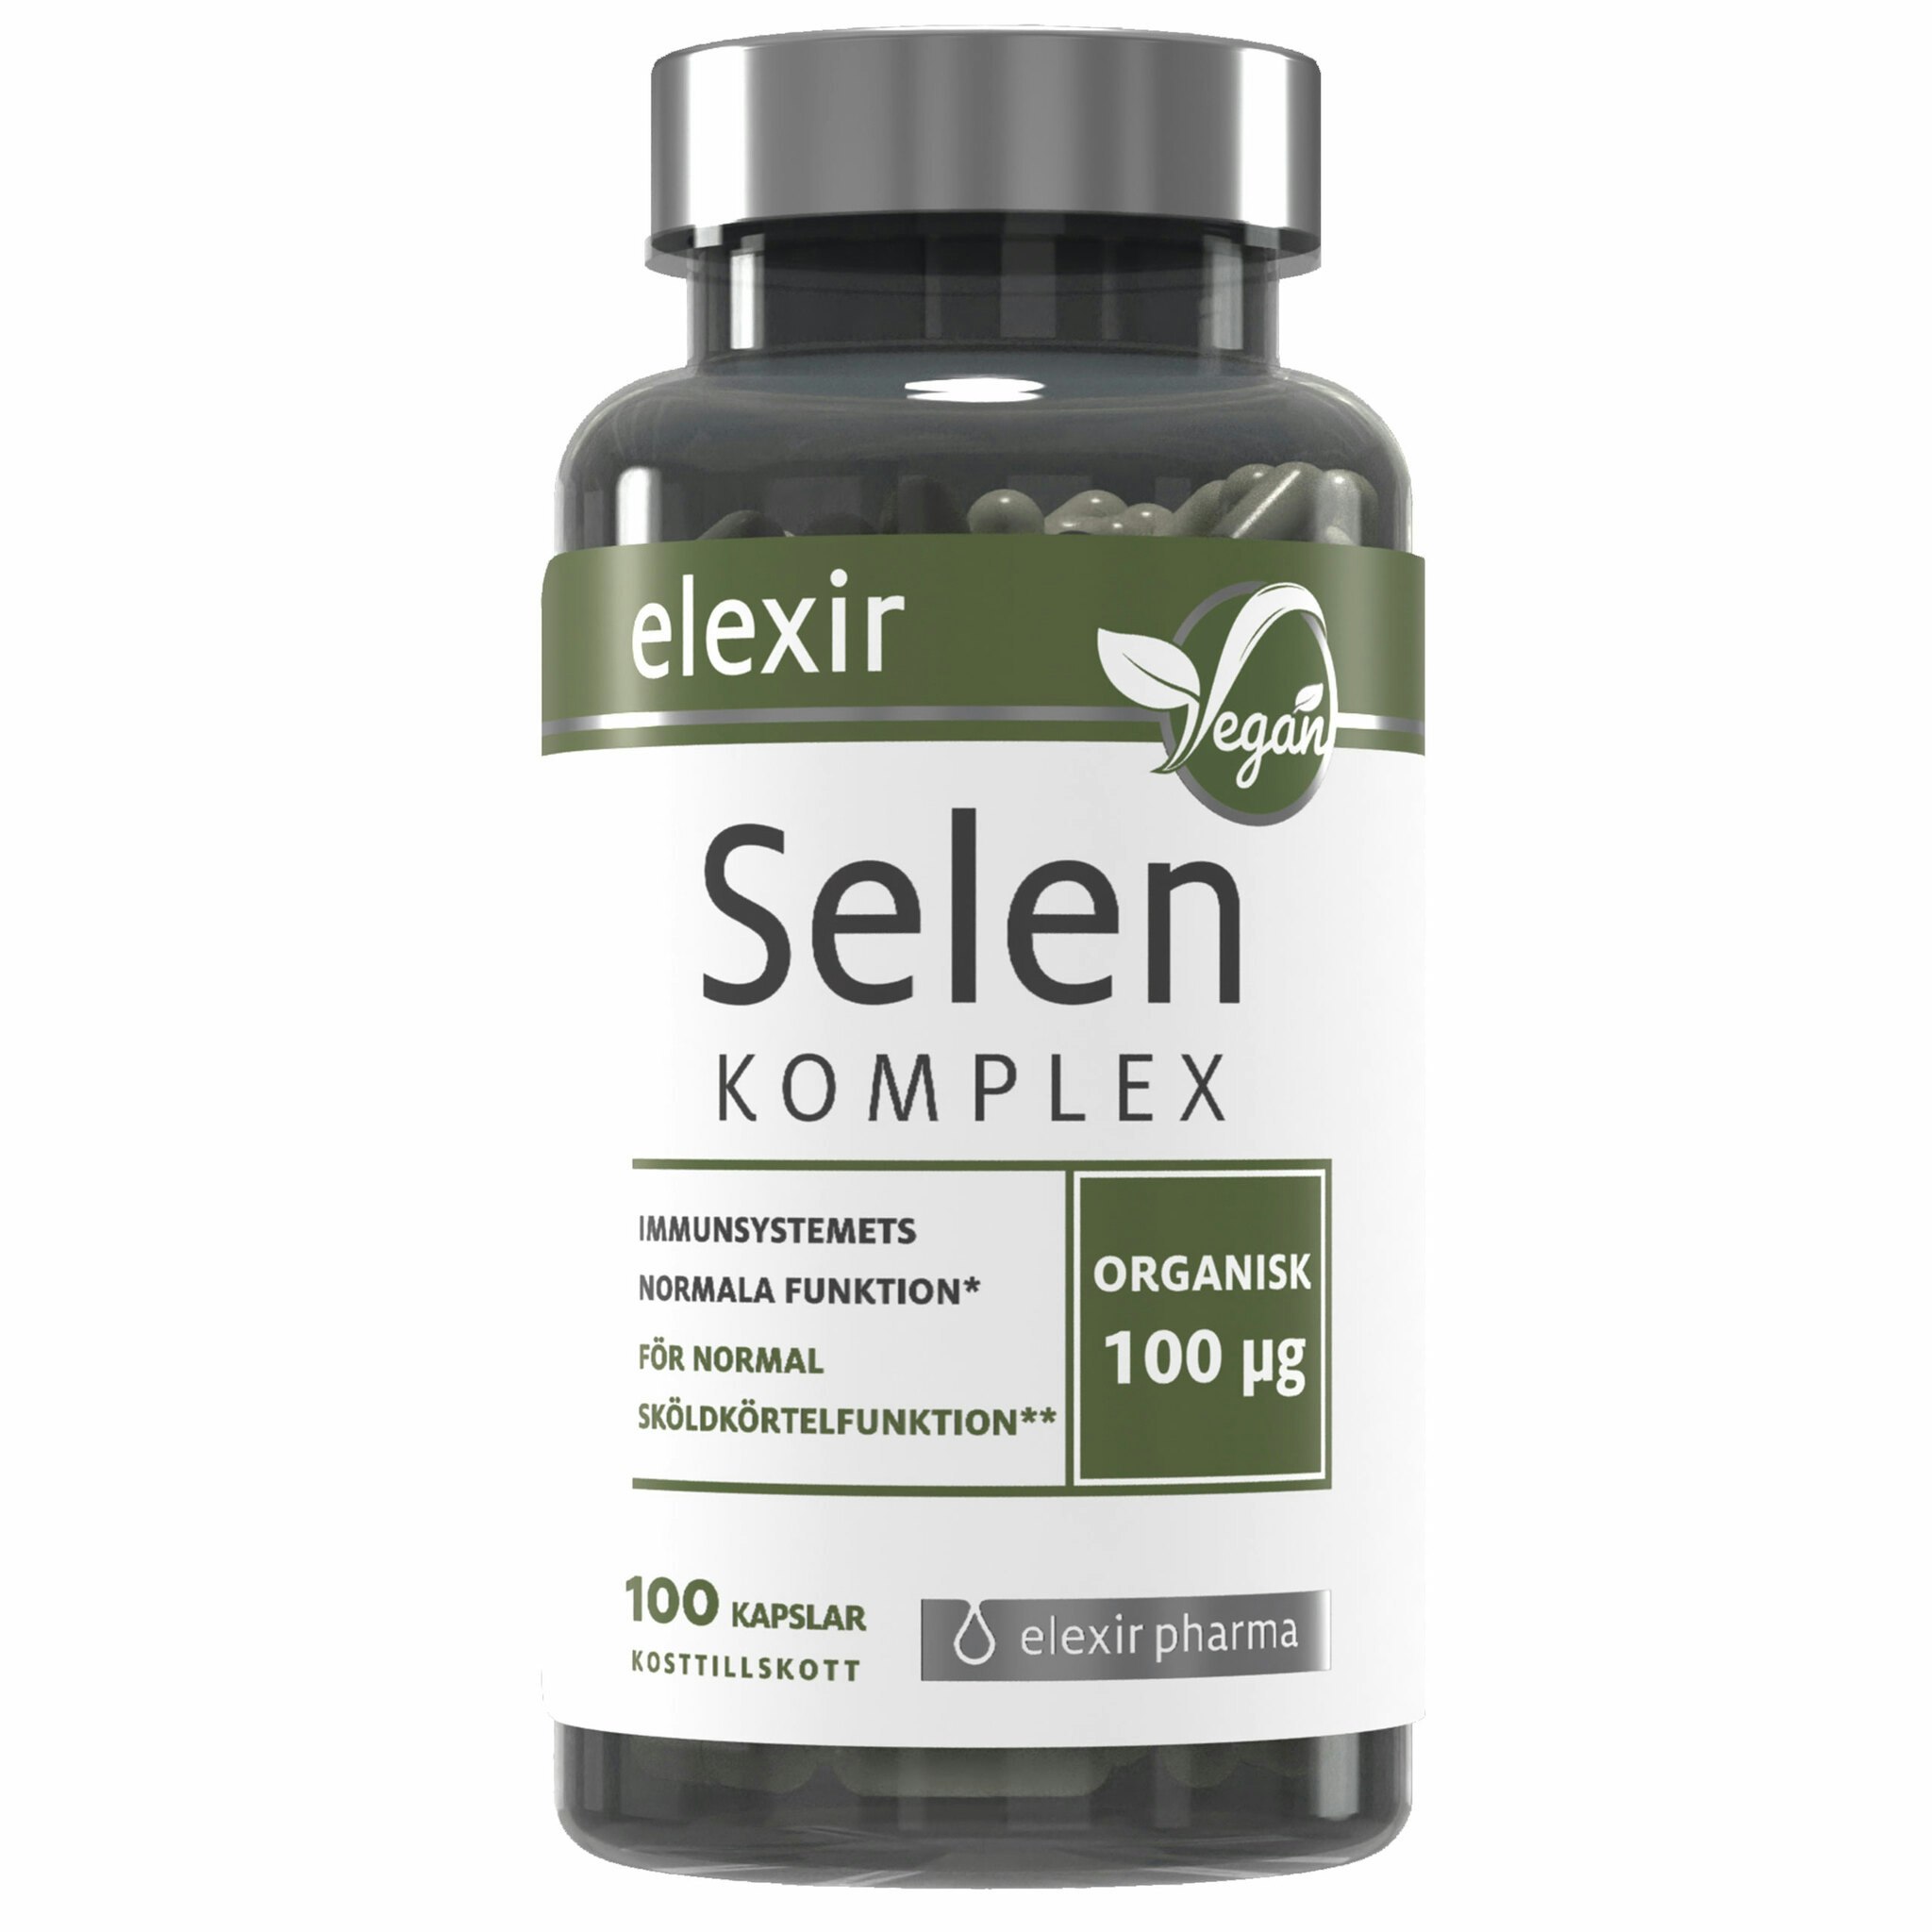 Elexir Pharma Selenium complex - 100 capsules